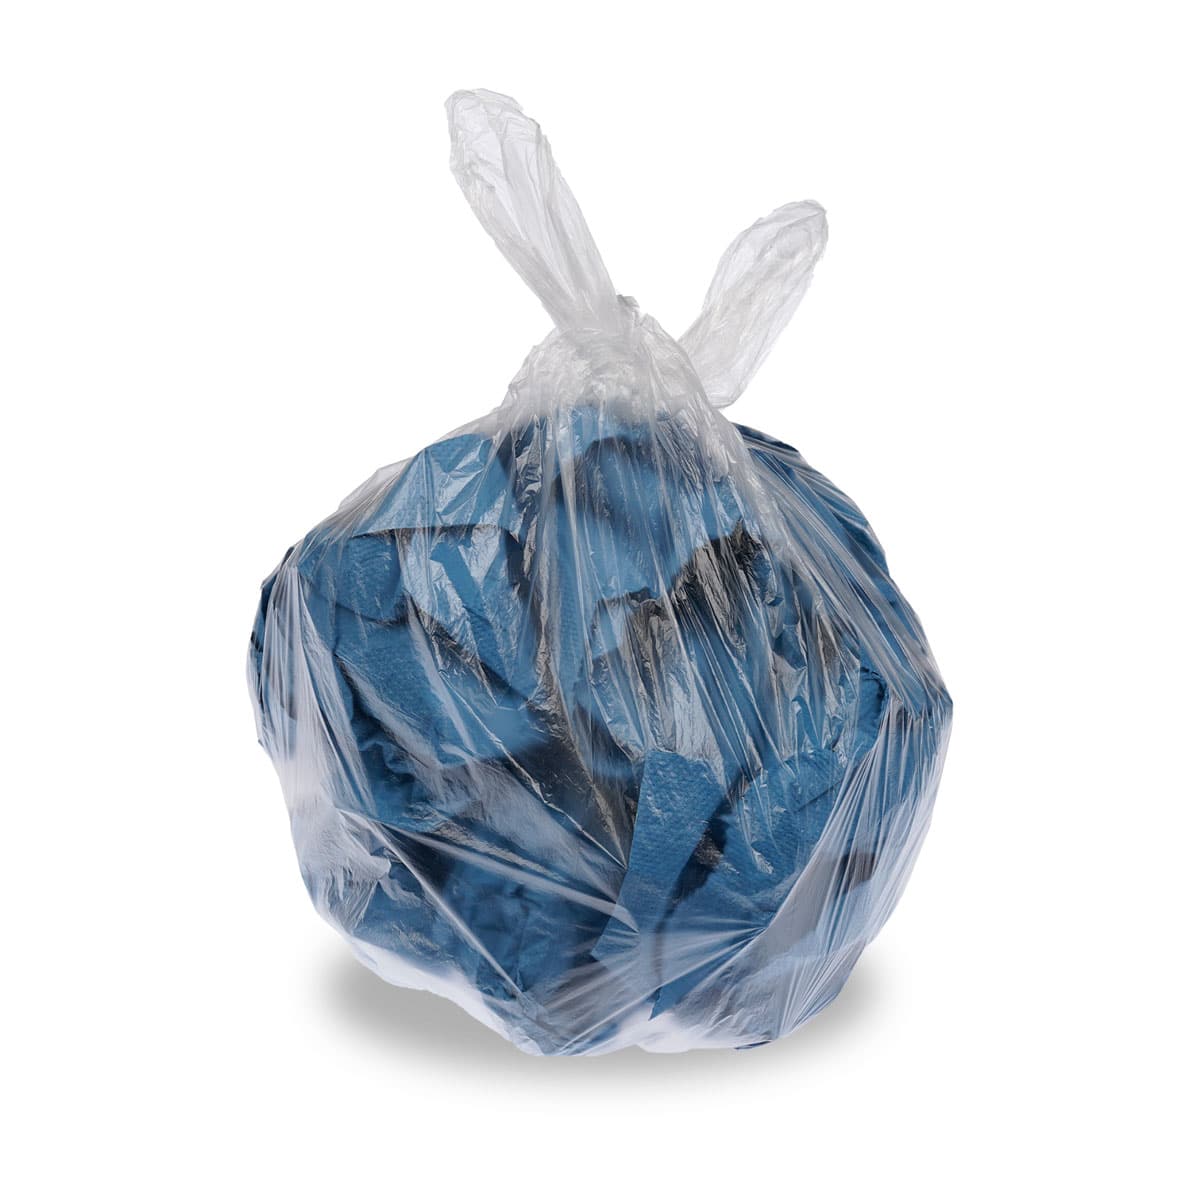 zetZubehör - Müllsack 120 Liter, Typ 100, blau, extra stark